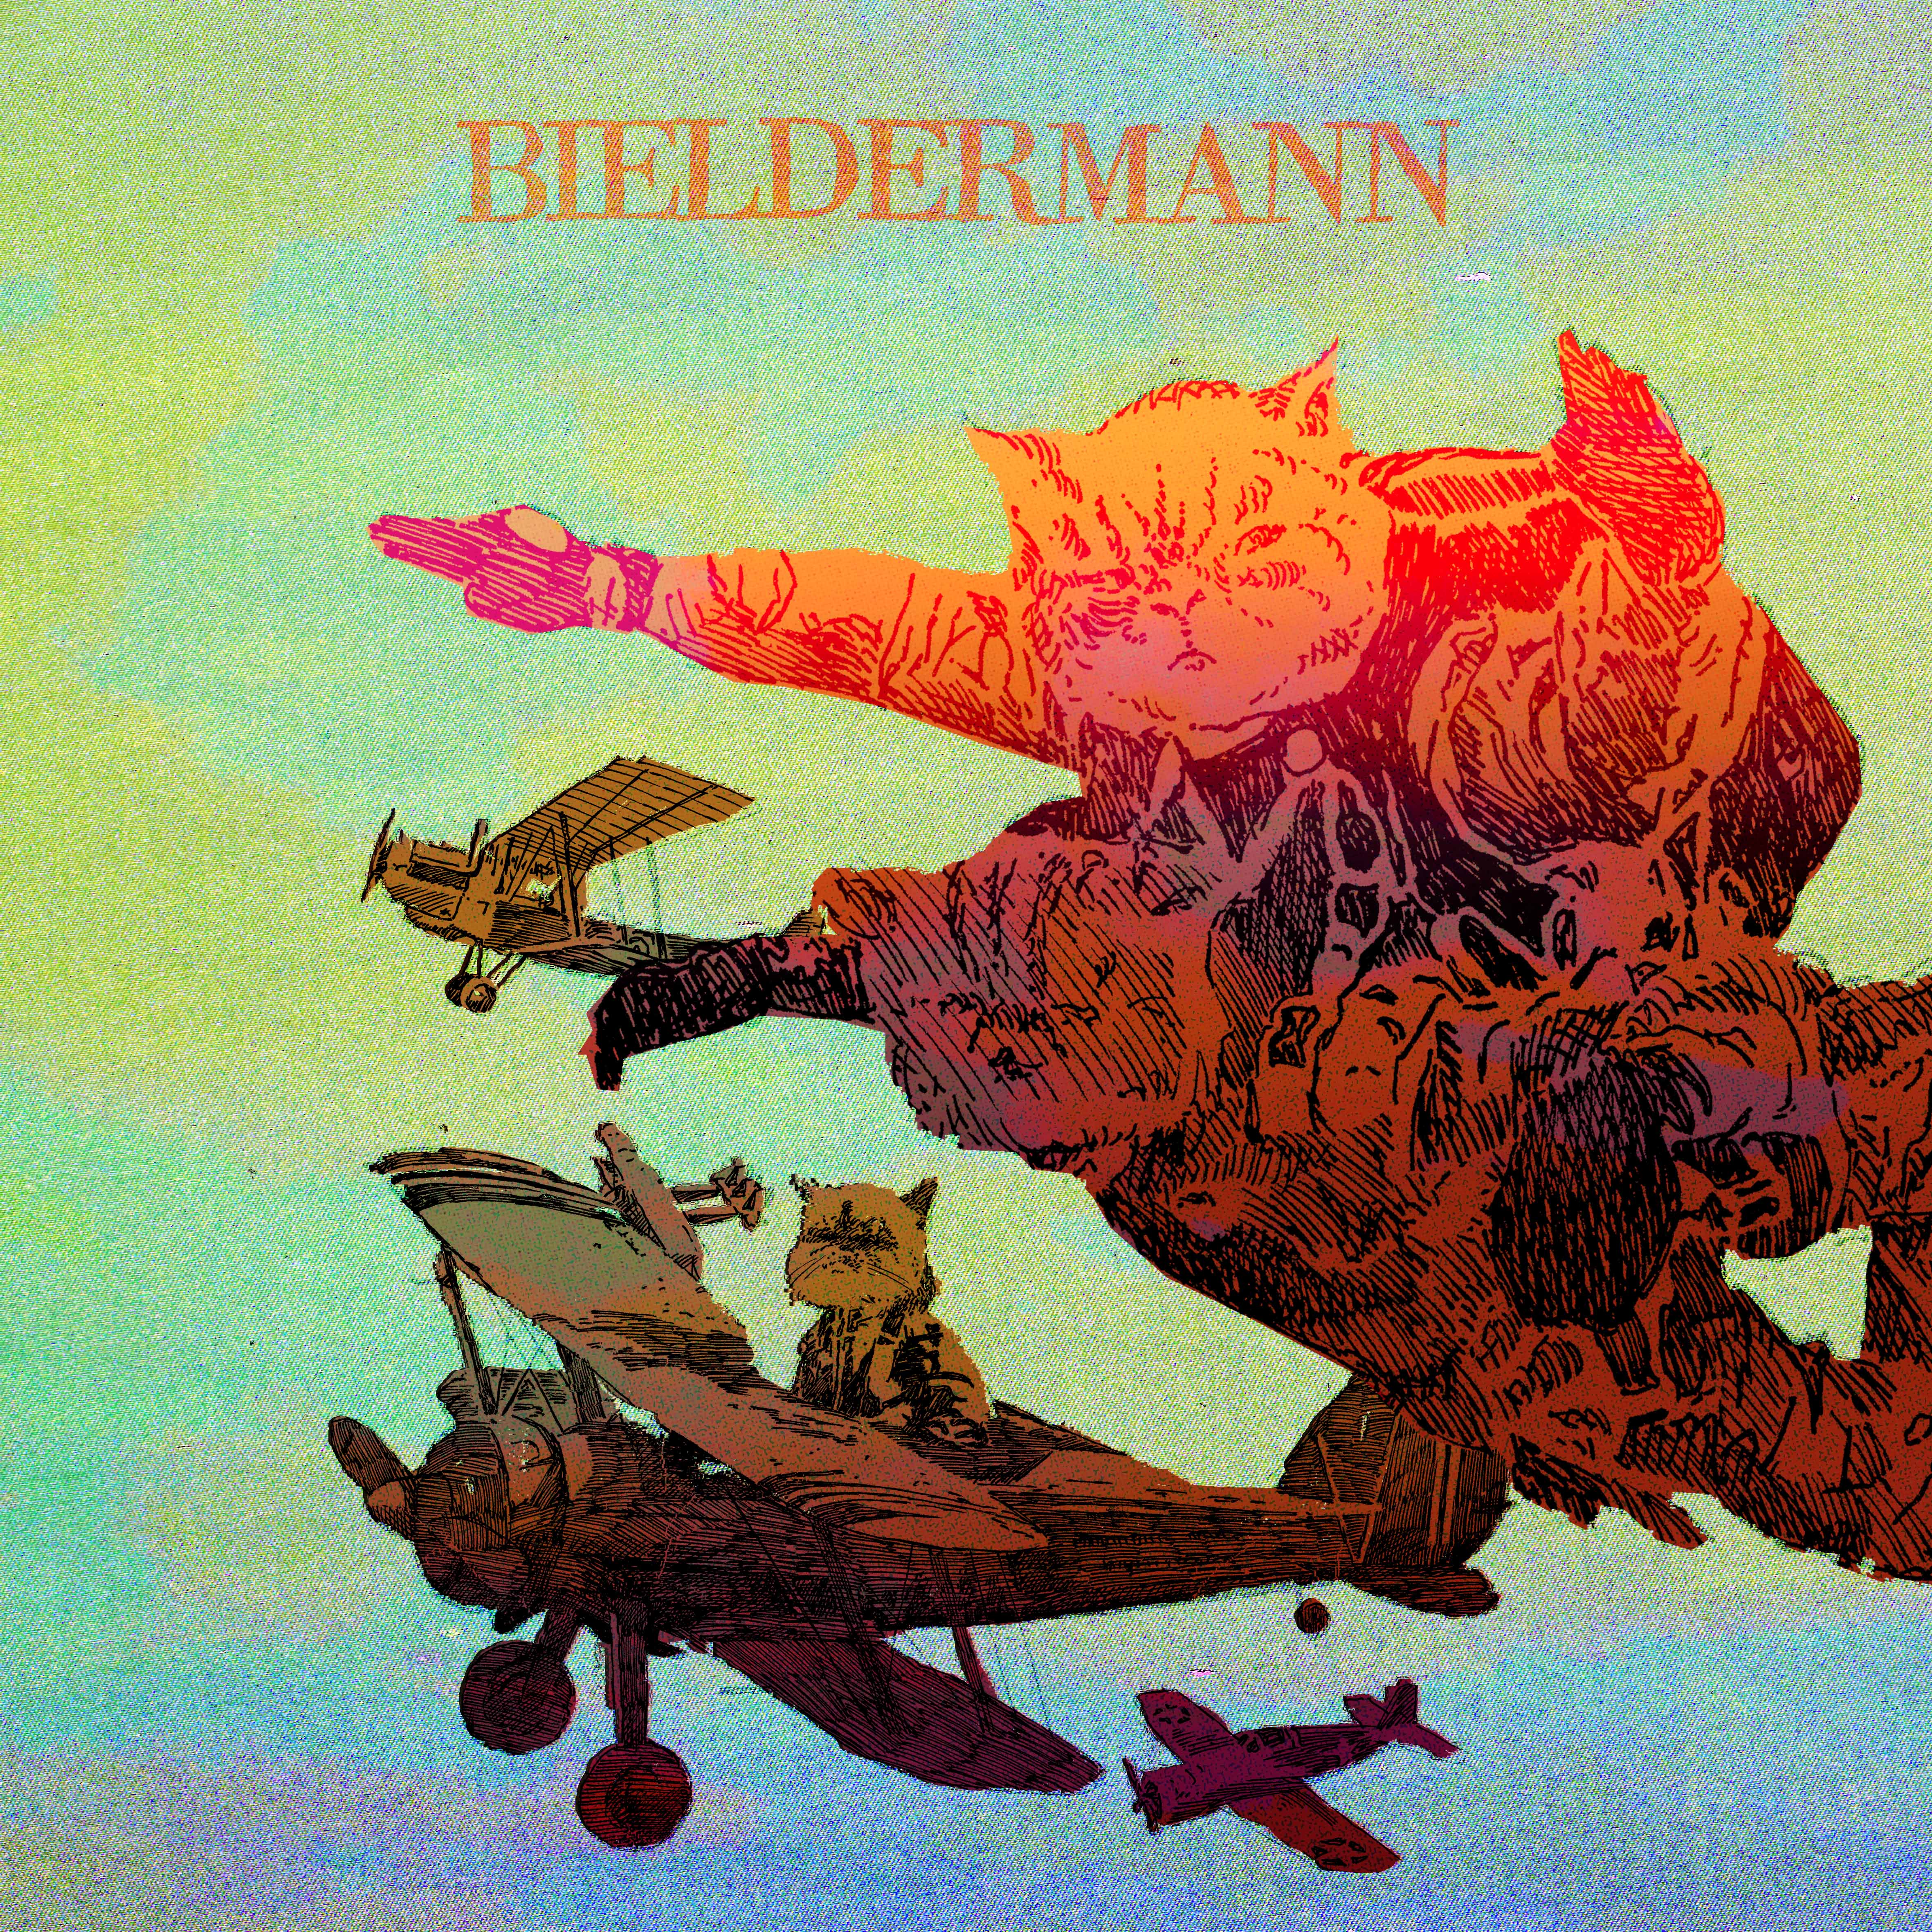 Bieldermann